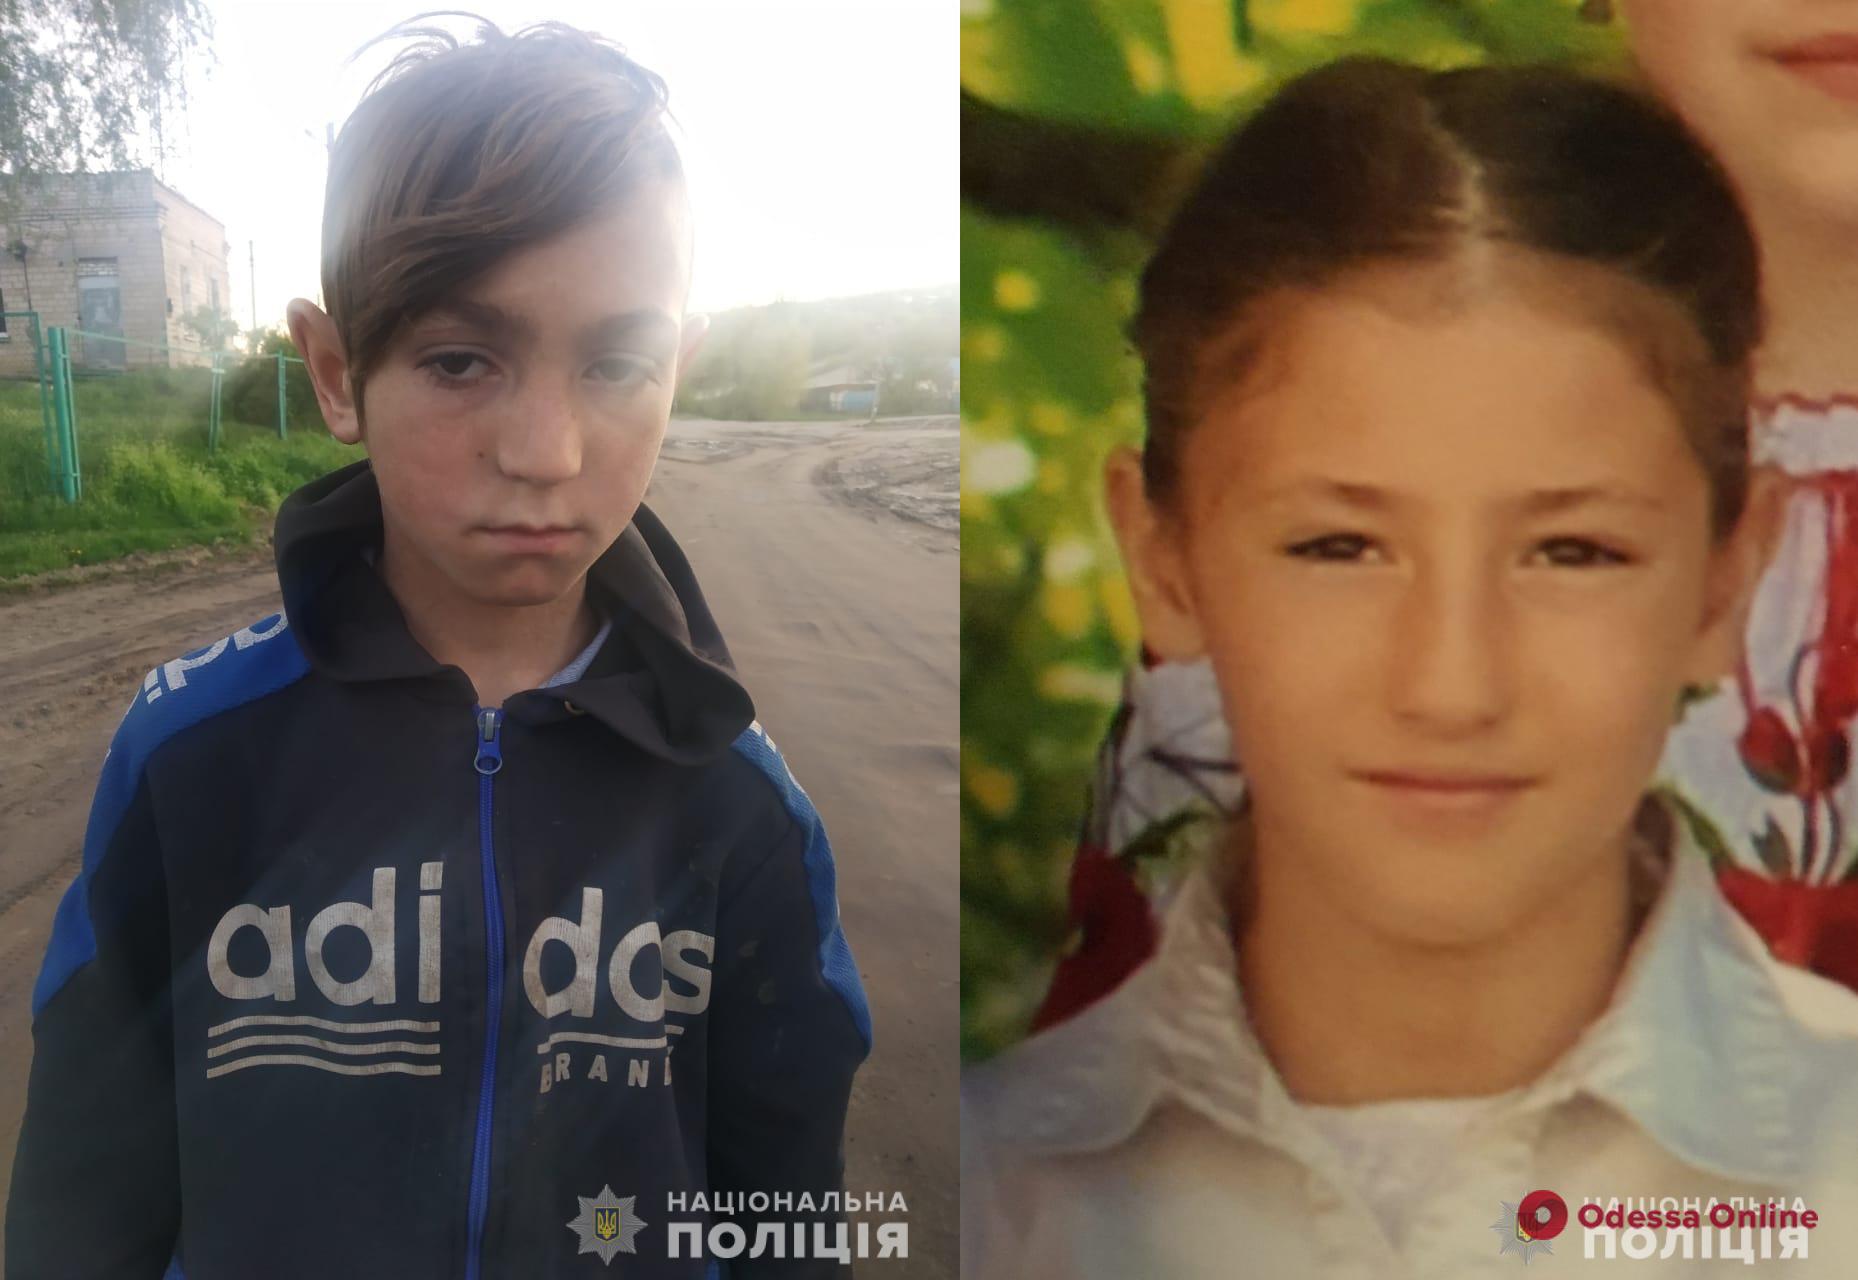 Ушли в школу и не вернулись: в Одесской области ищут 11-летнего мальчика и его 14-летнюю сестру (обновлено)